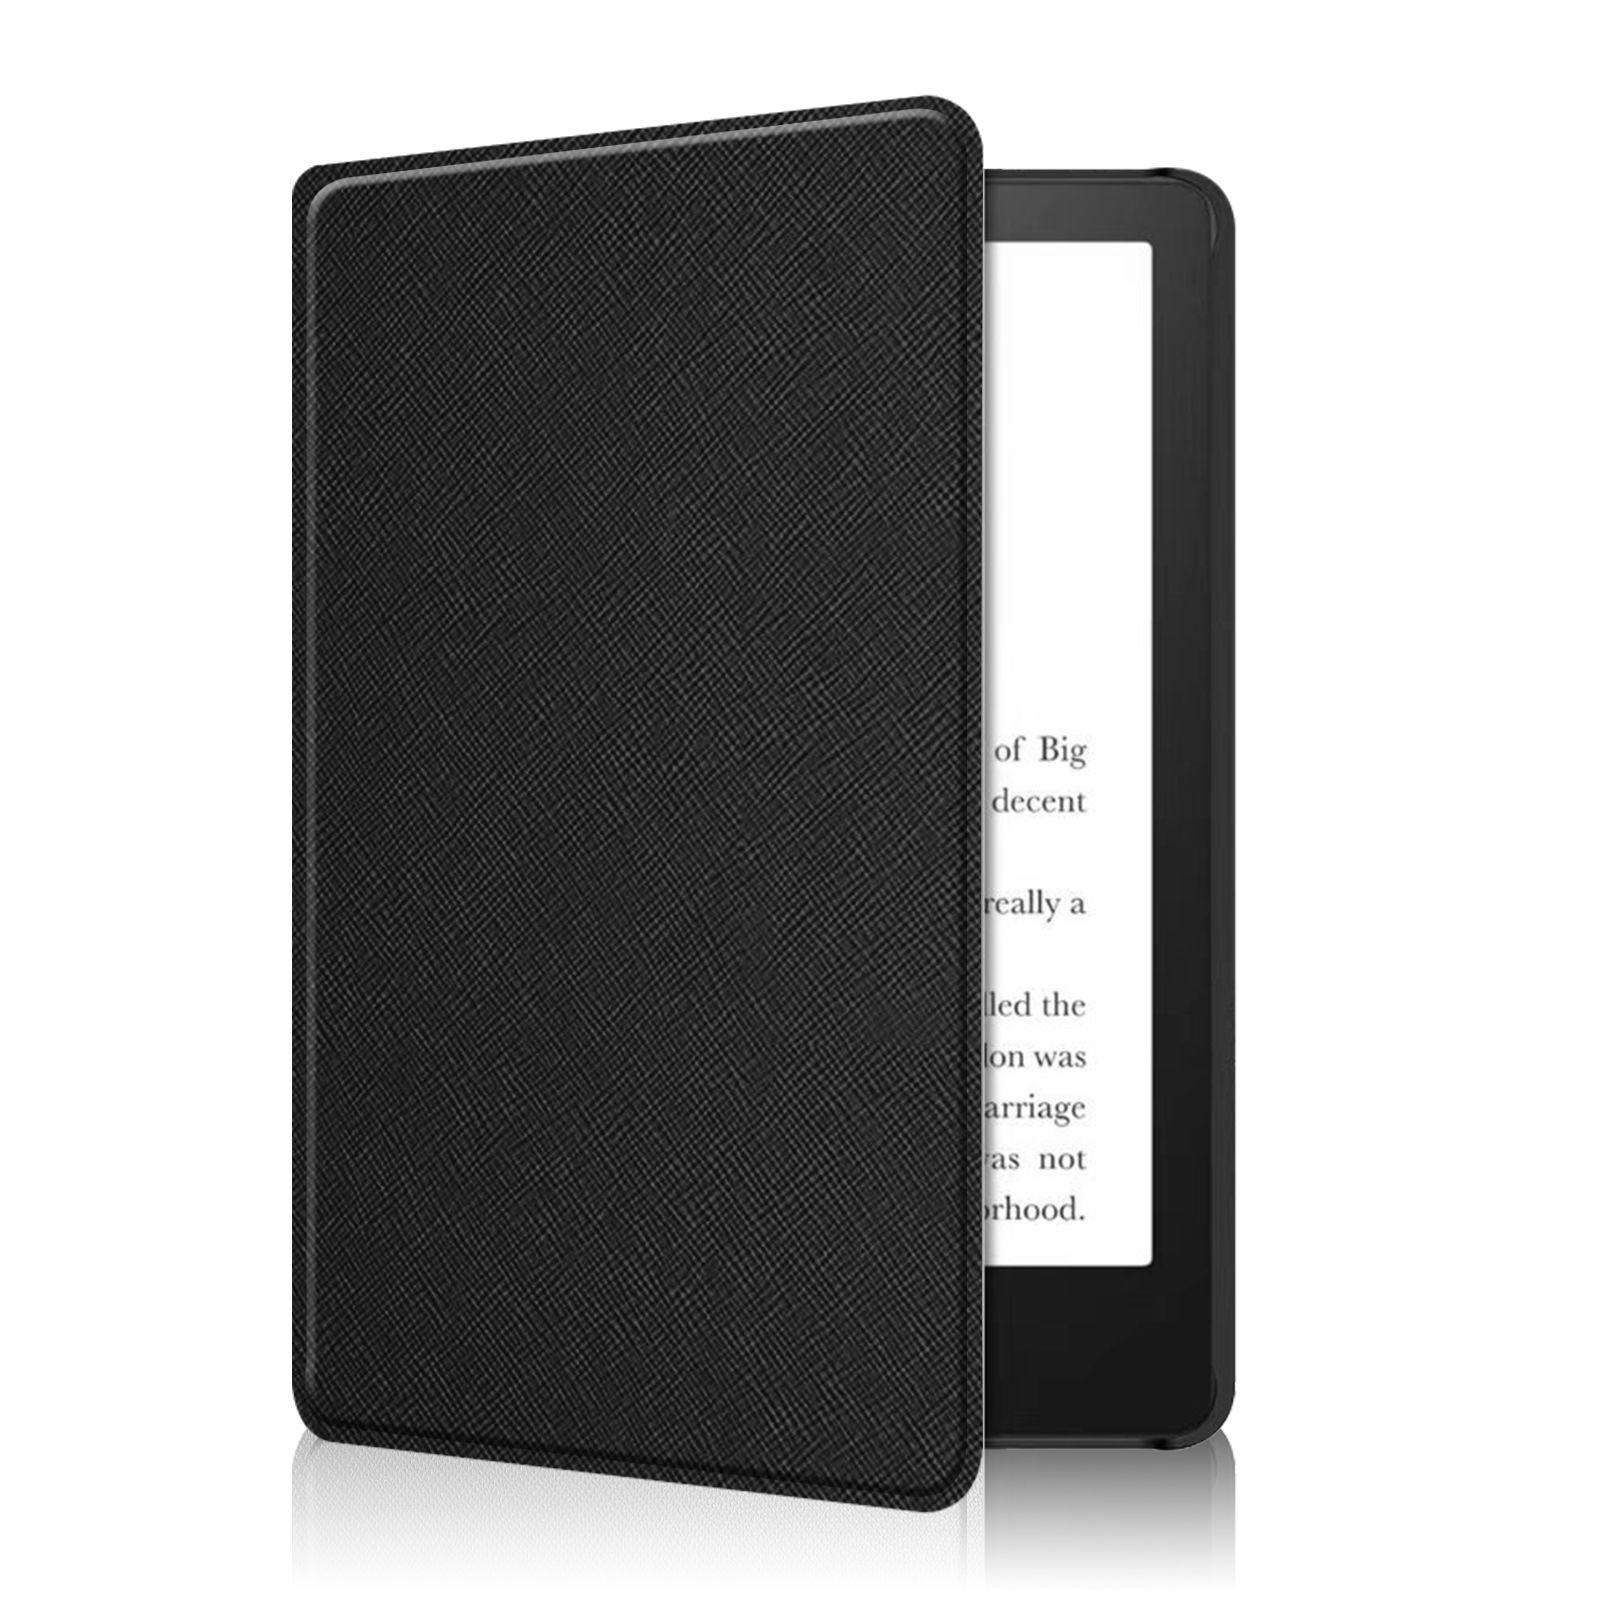 Case case Amazon Kindle 10 2019 K658 6 inch - type 9